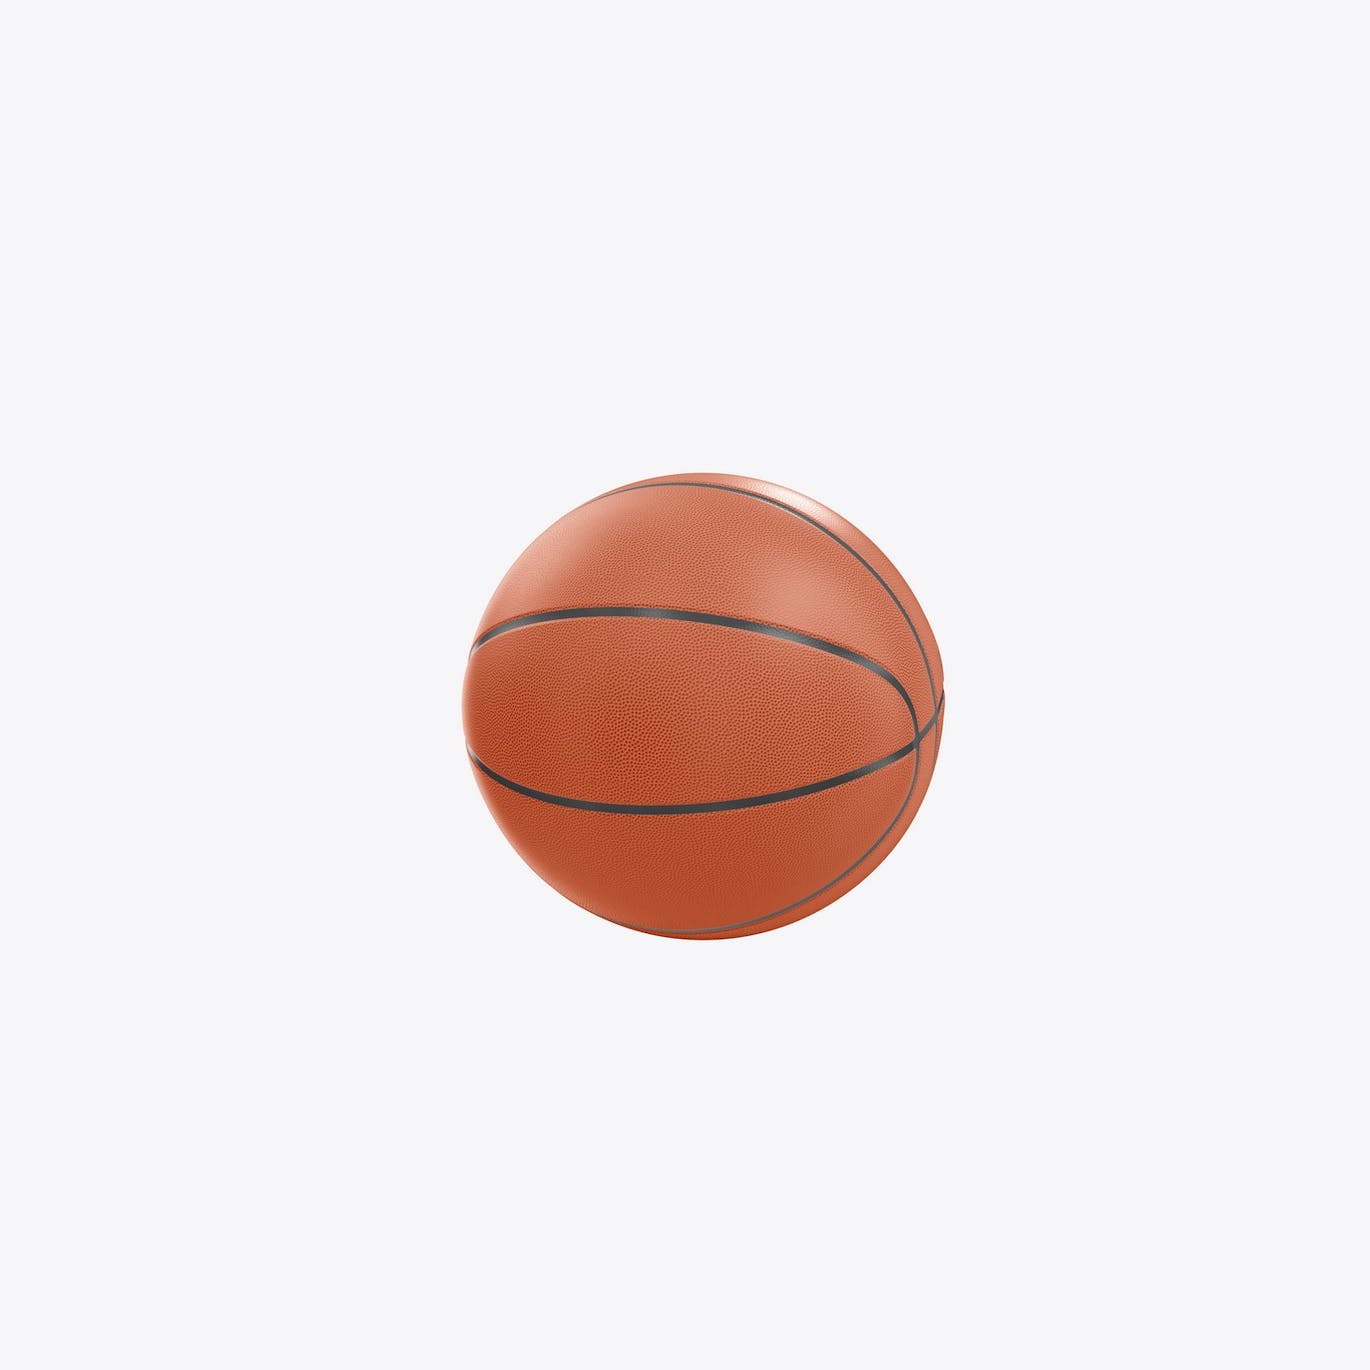 篮球运动品牌设计样机 Basketball Ball Mockup 样机素材 第3张